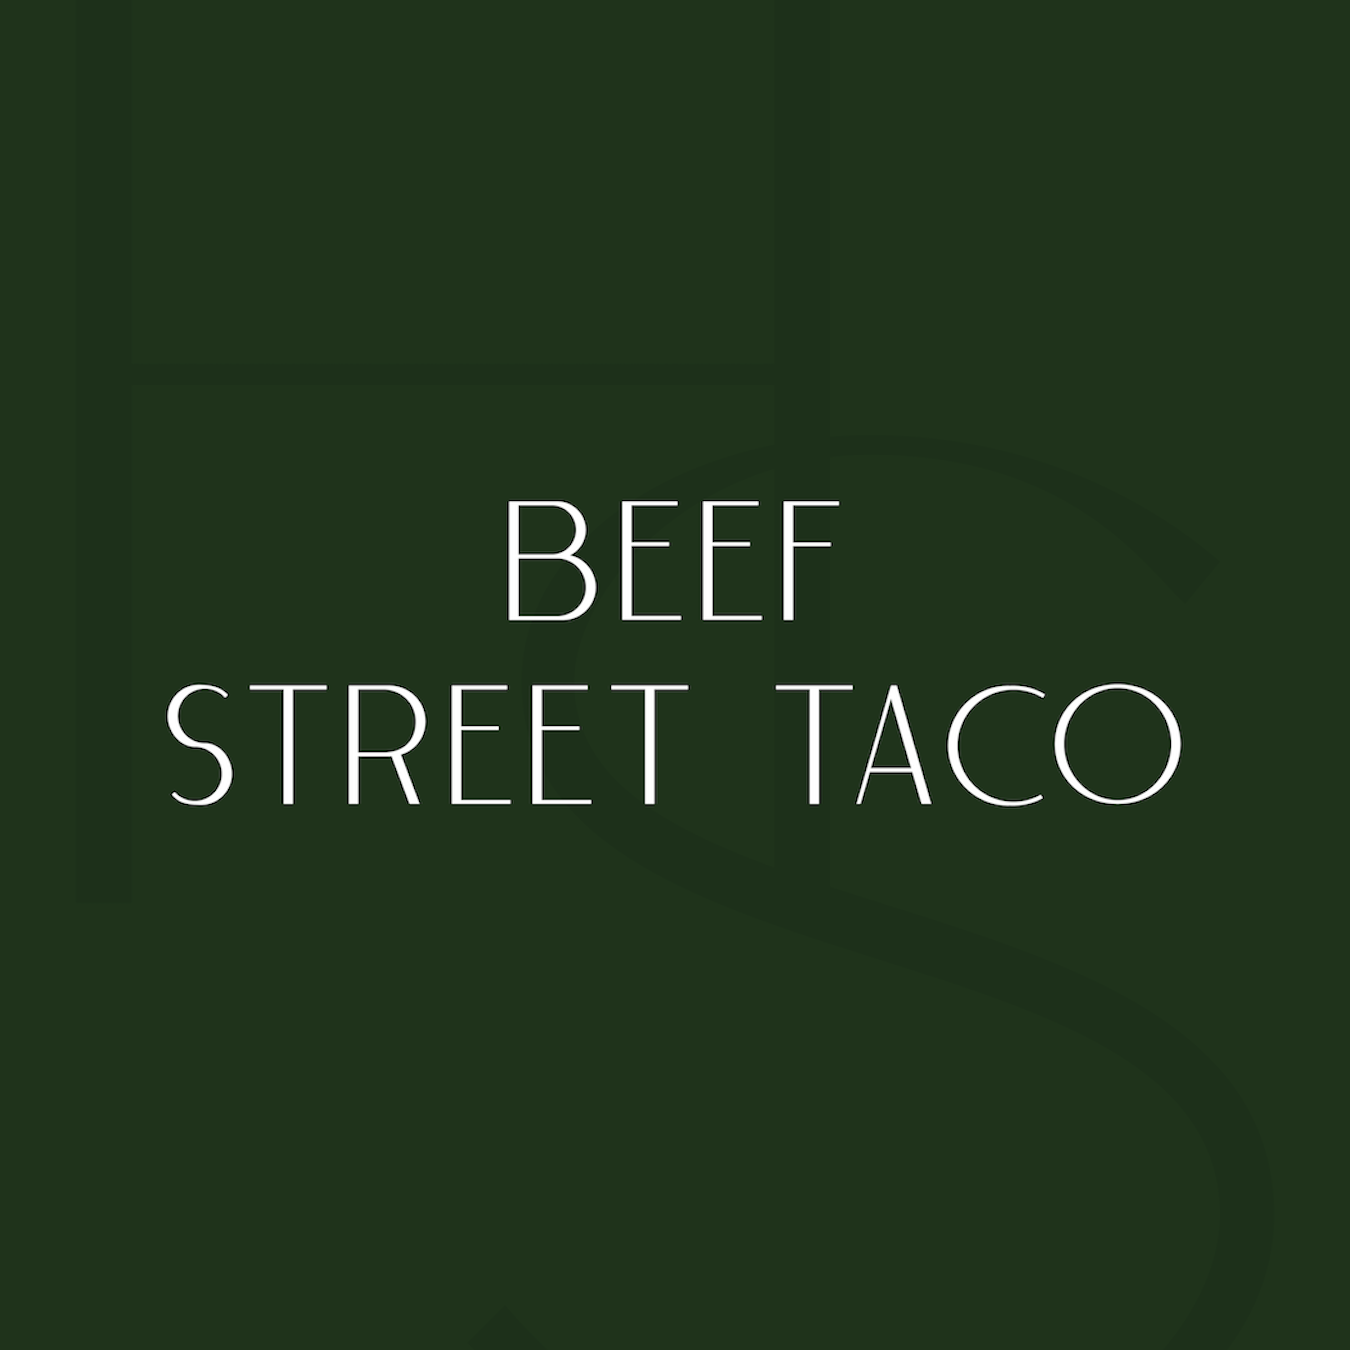 Beef Street Taco